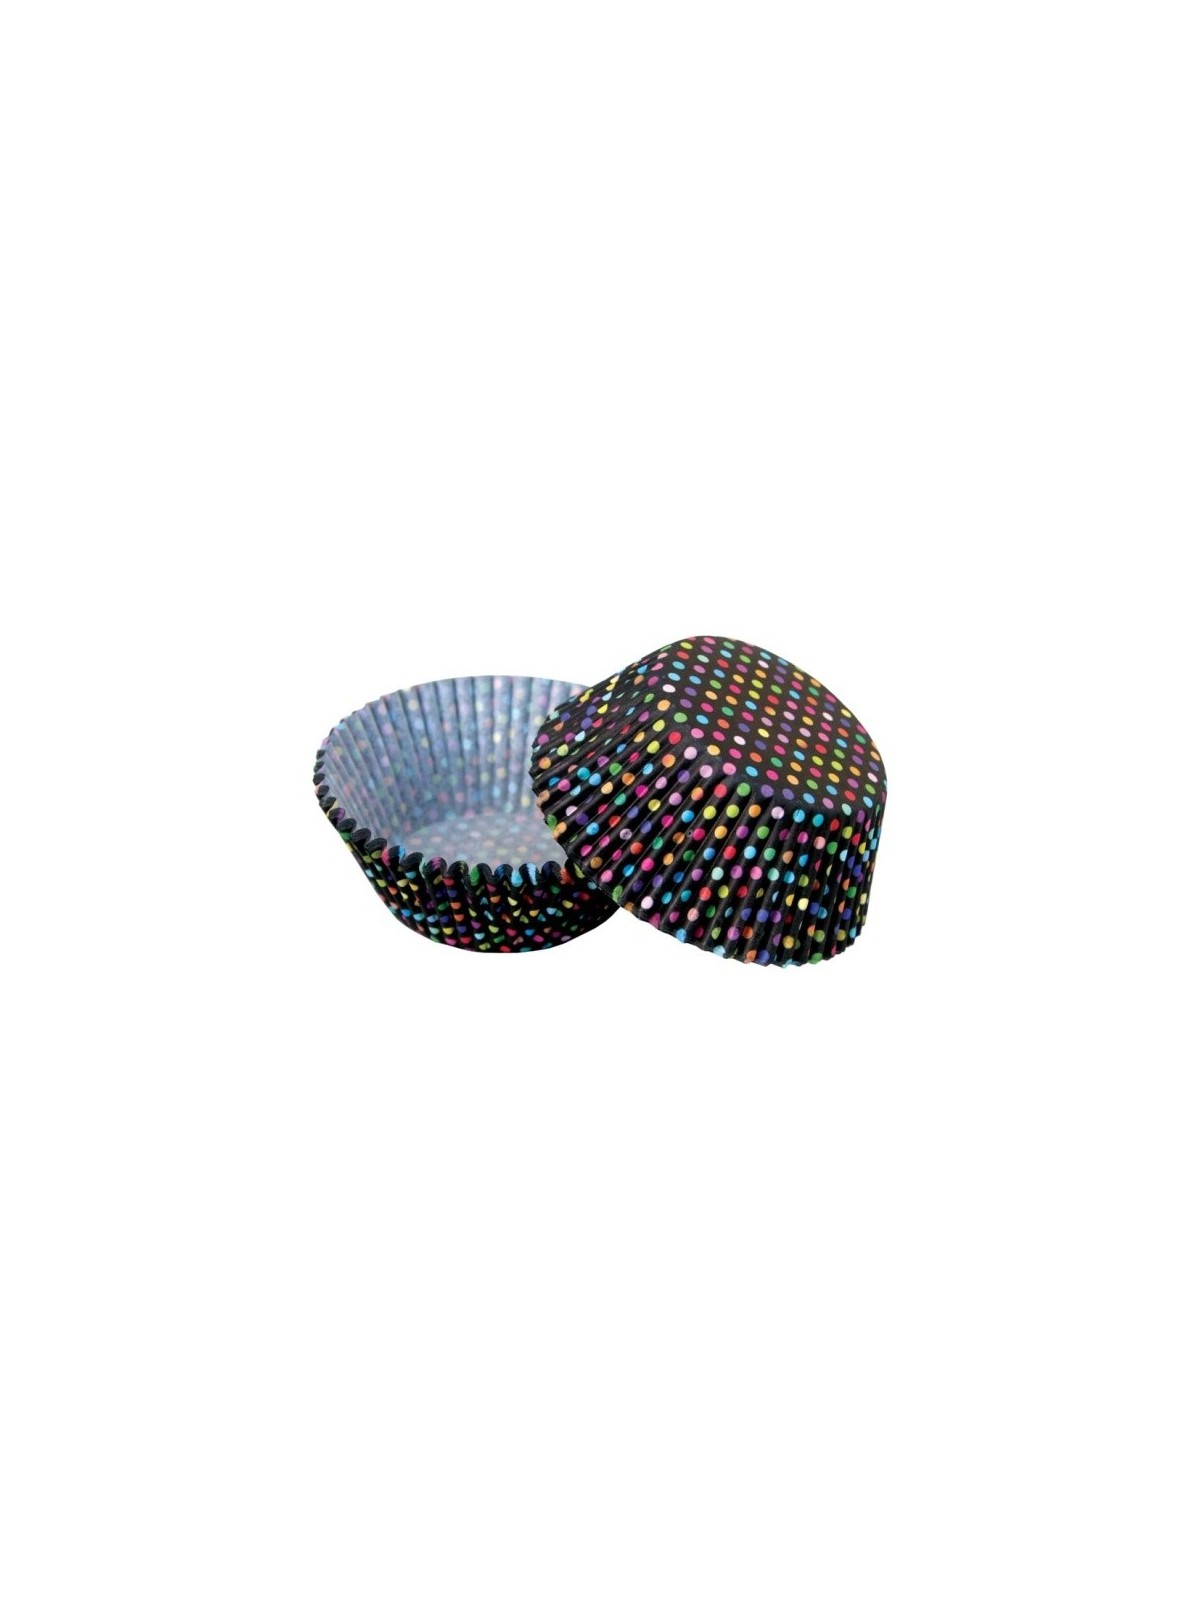 Cukrářské košíčky - barevné puntíky - 50ks